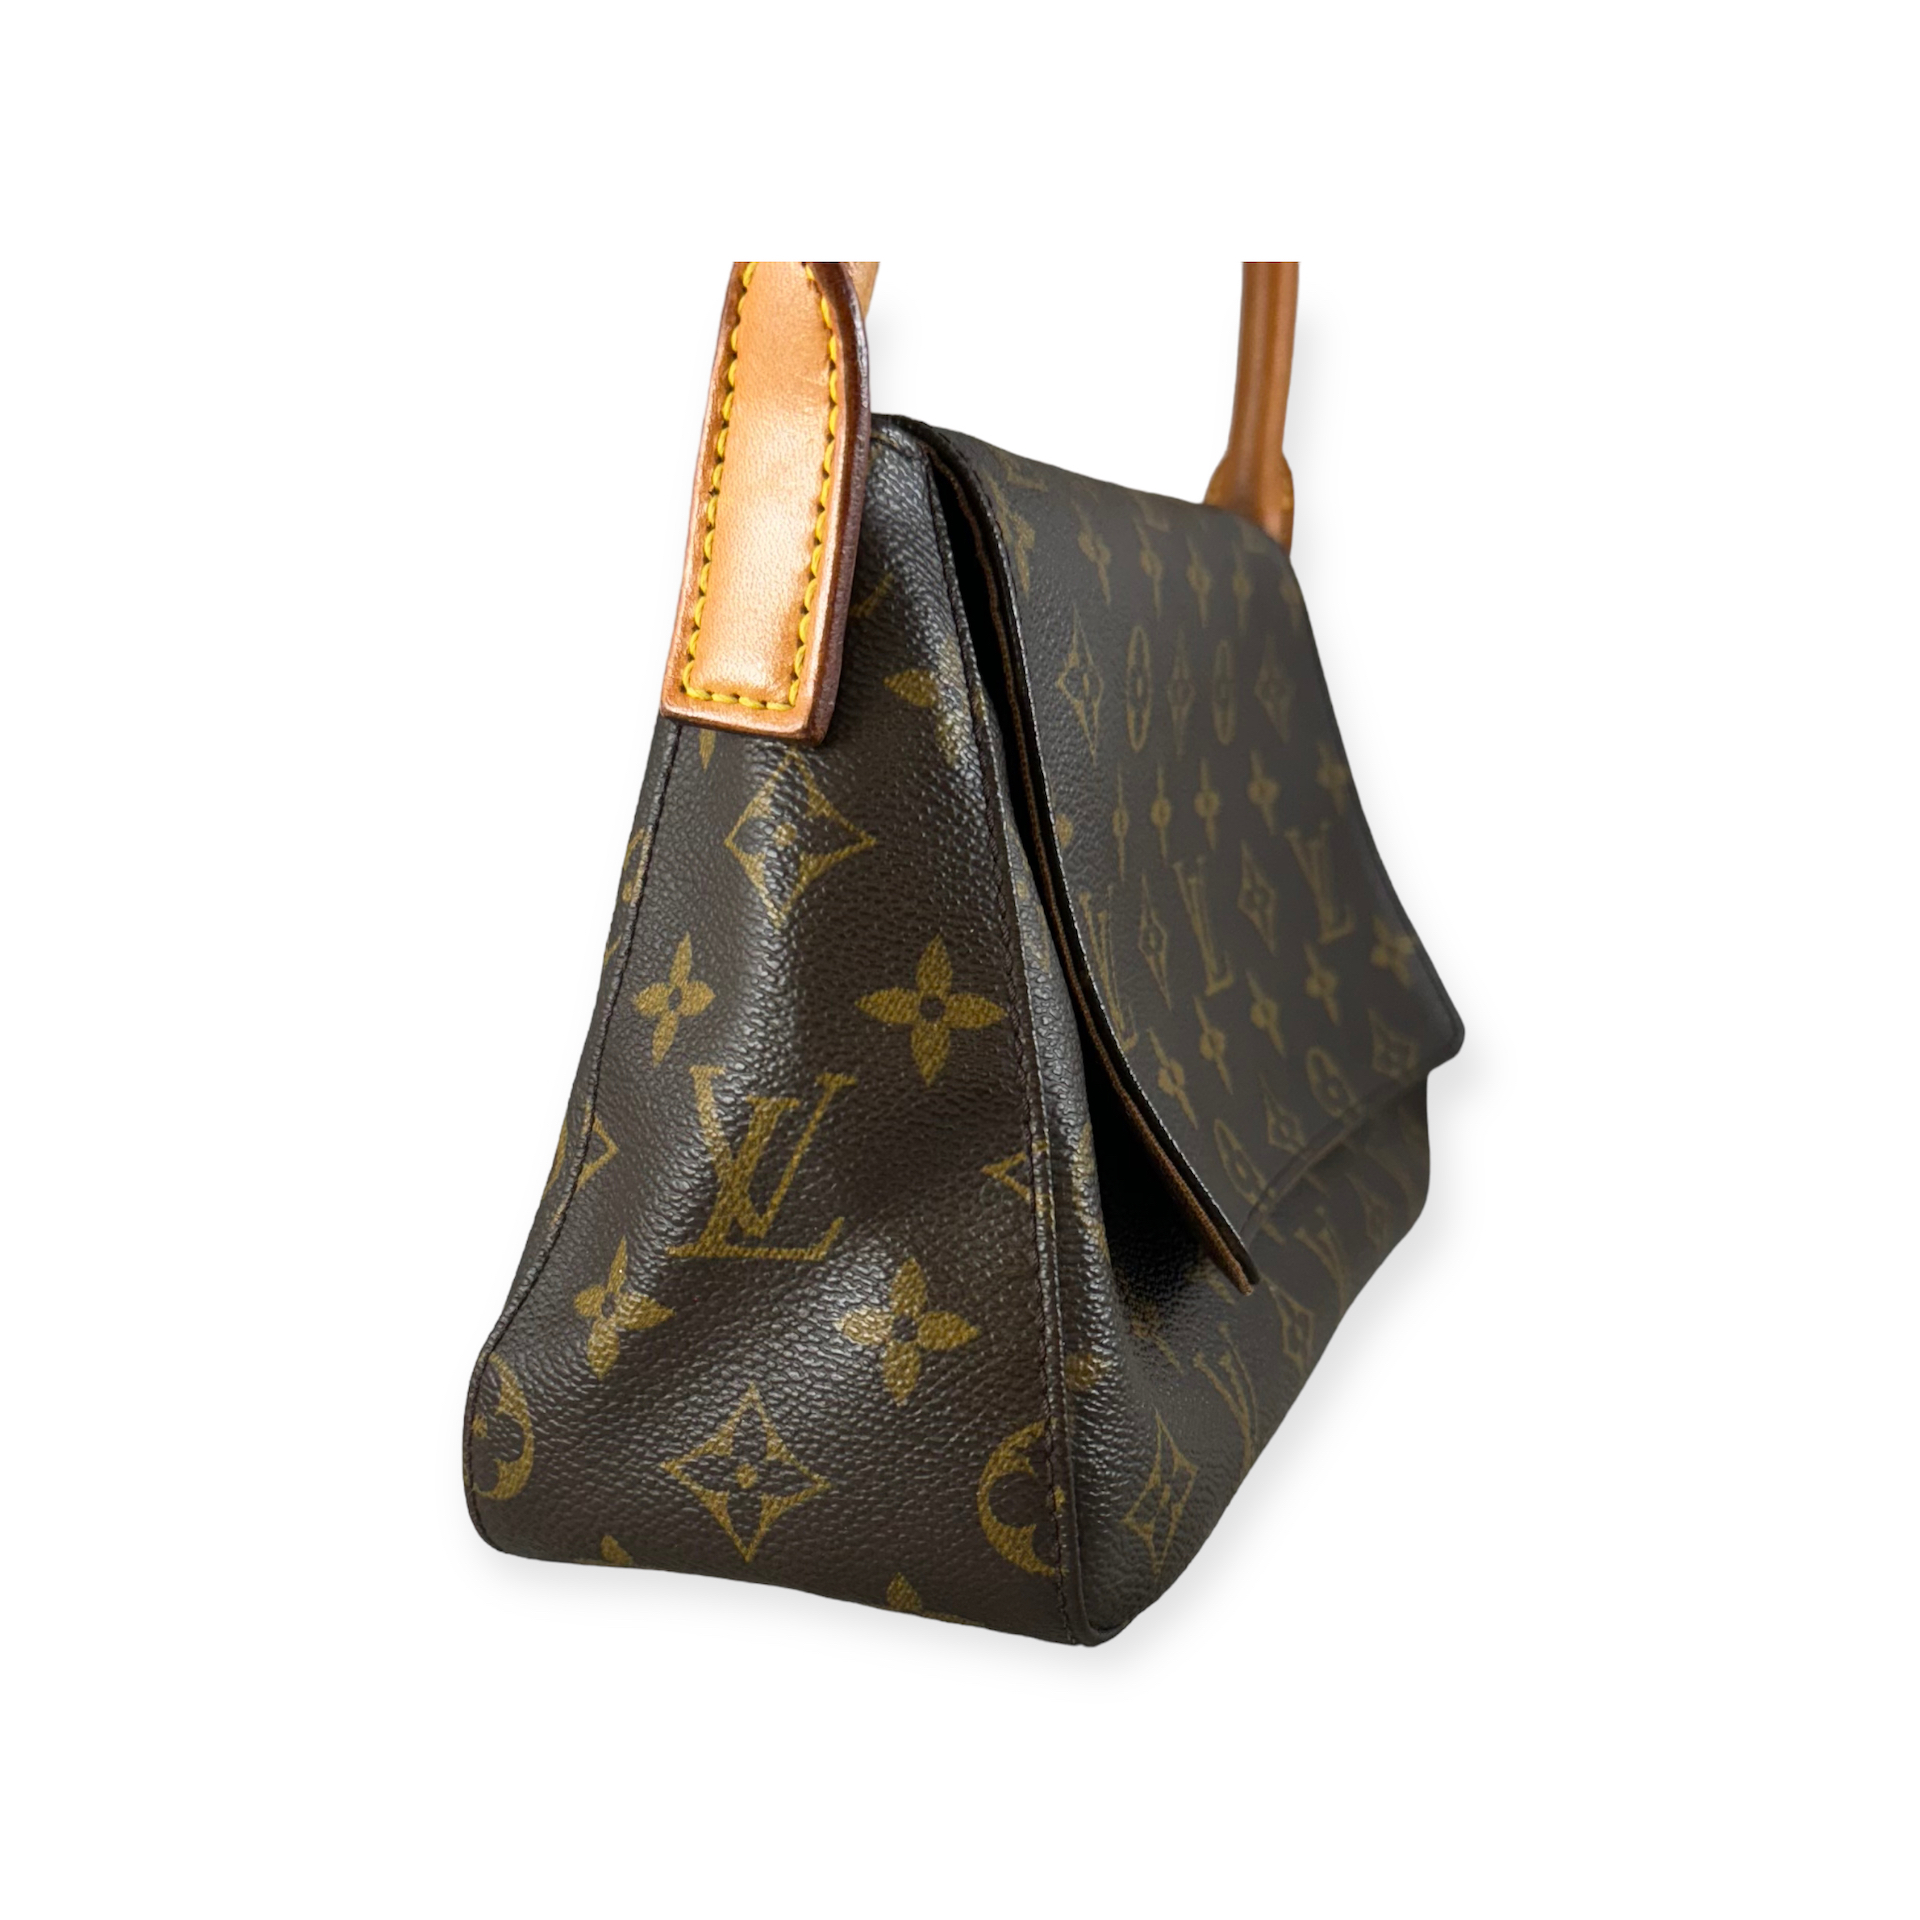 Louis Vuitton Looping PM Monogram Handbag